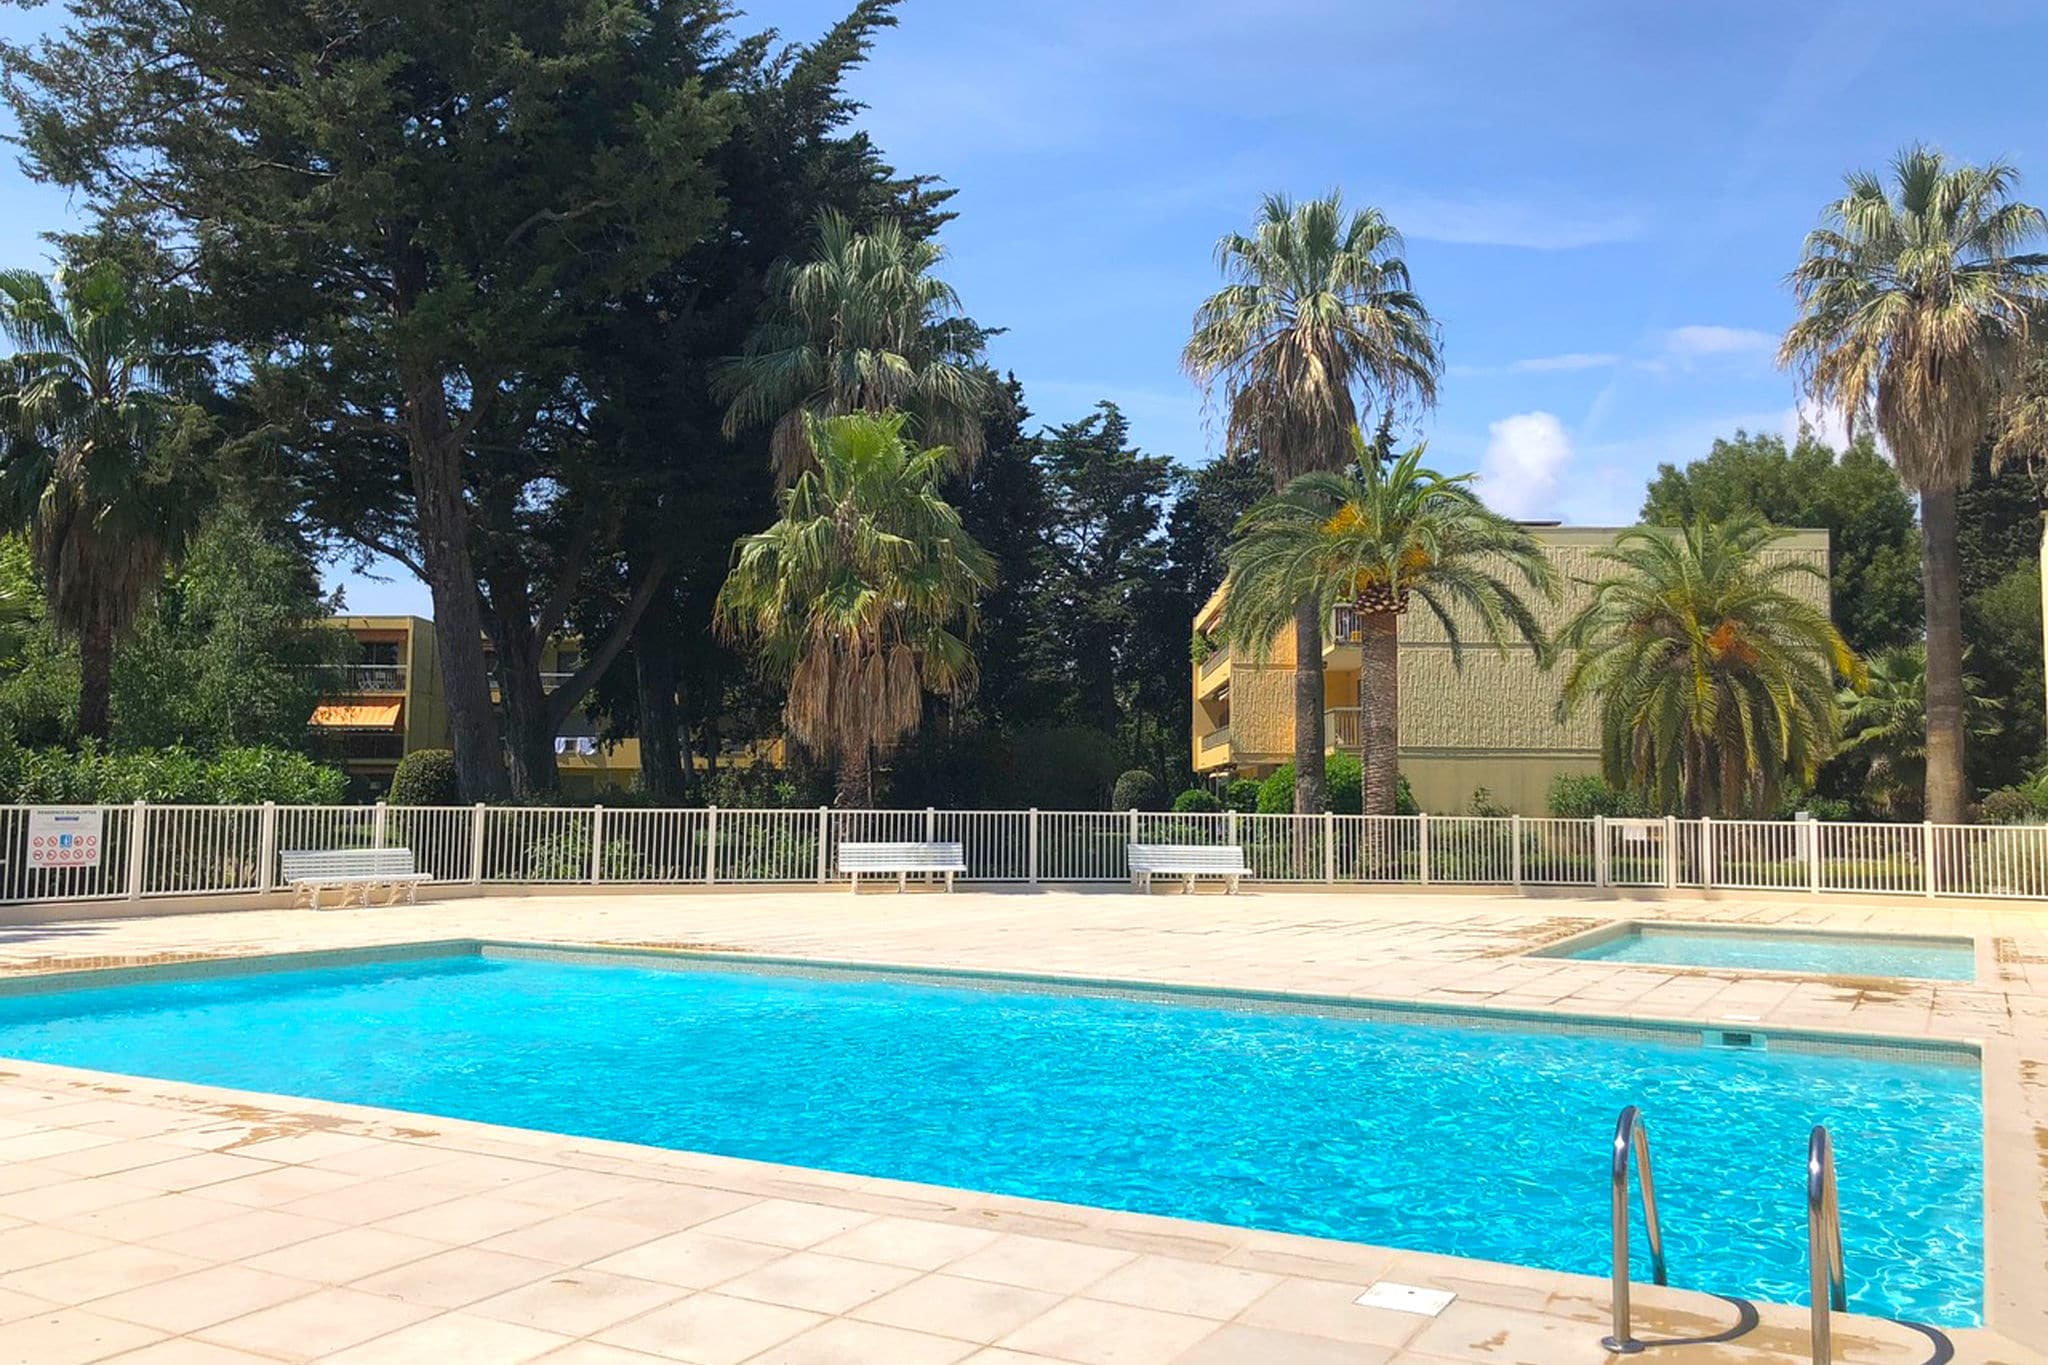 Appartement moderne dans le sud de la France, grande piscine